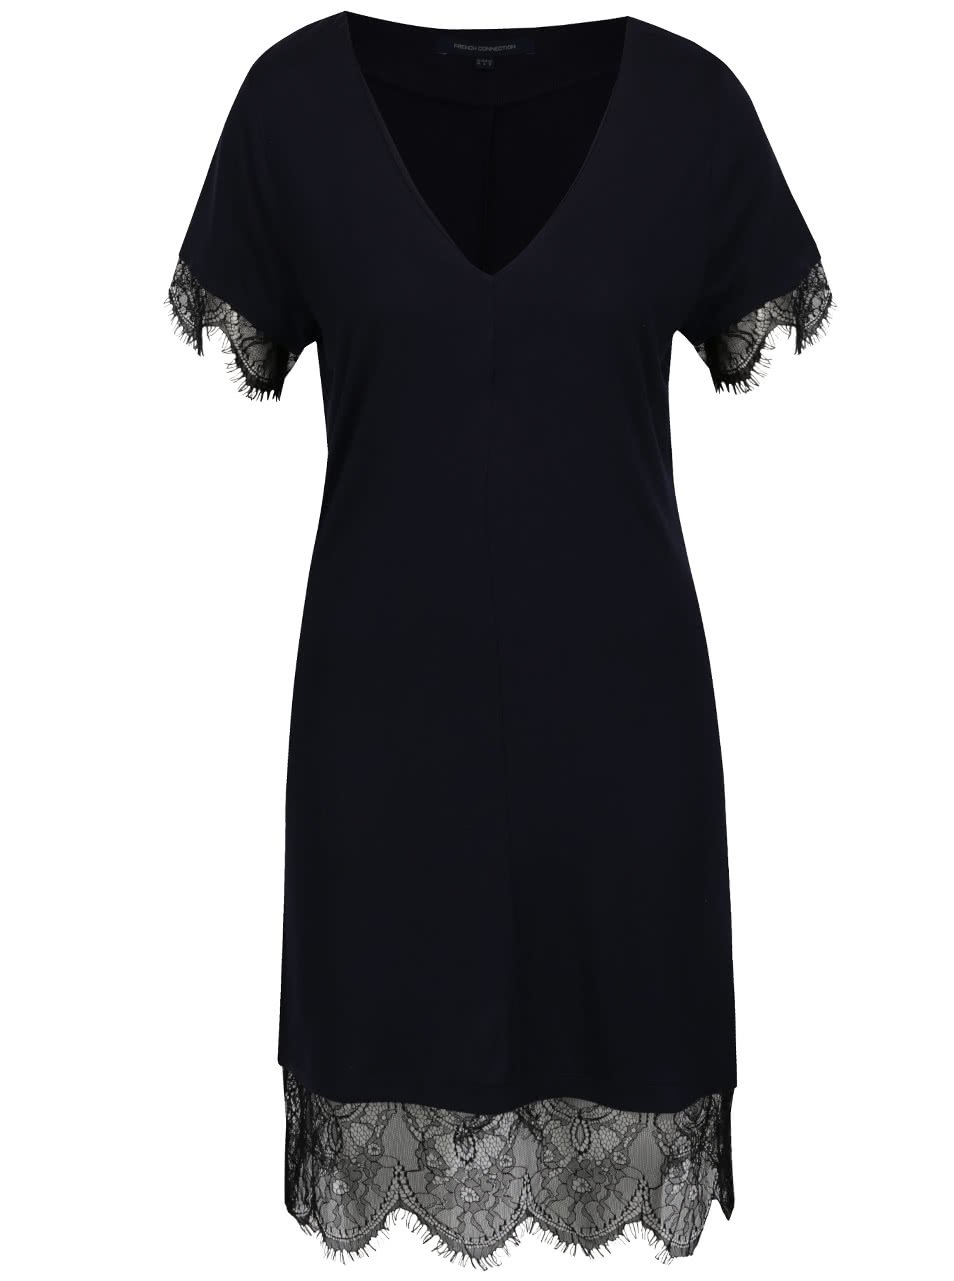 Černo-modré šaty s krajkovými lemy French Connection Swift